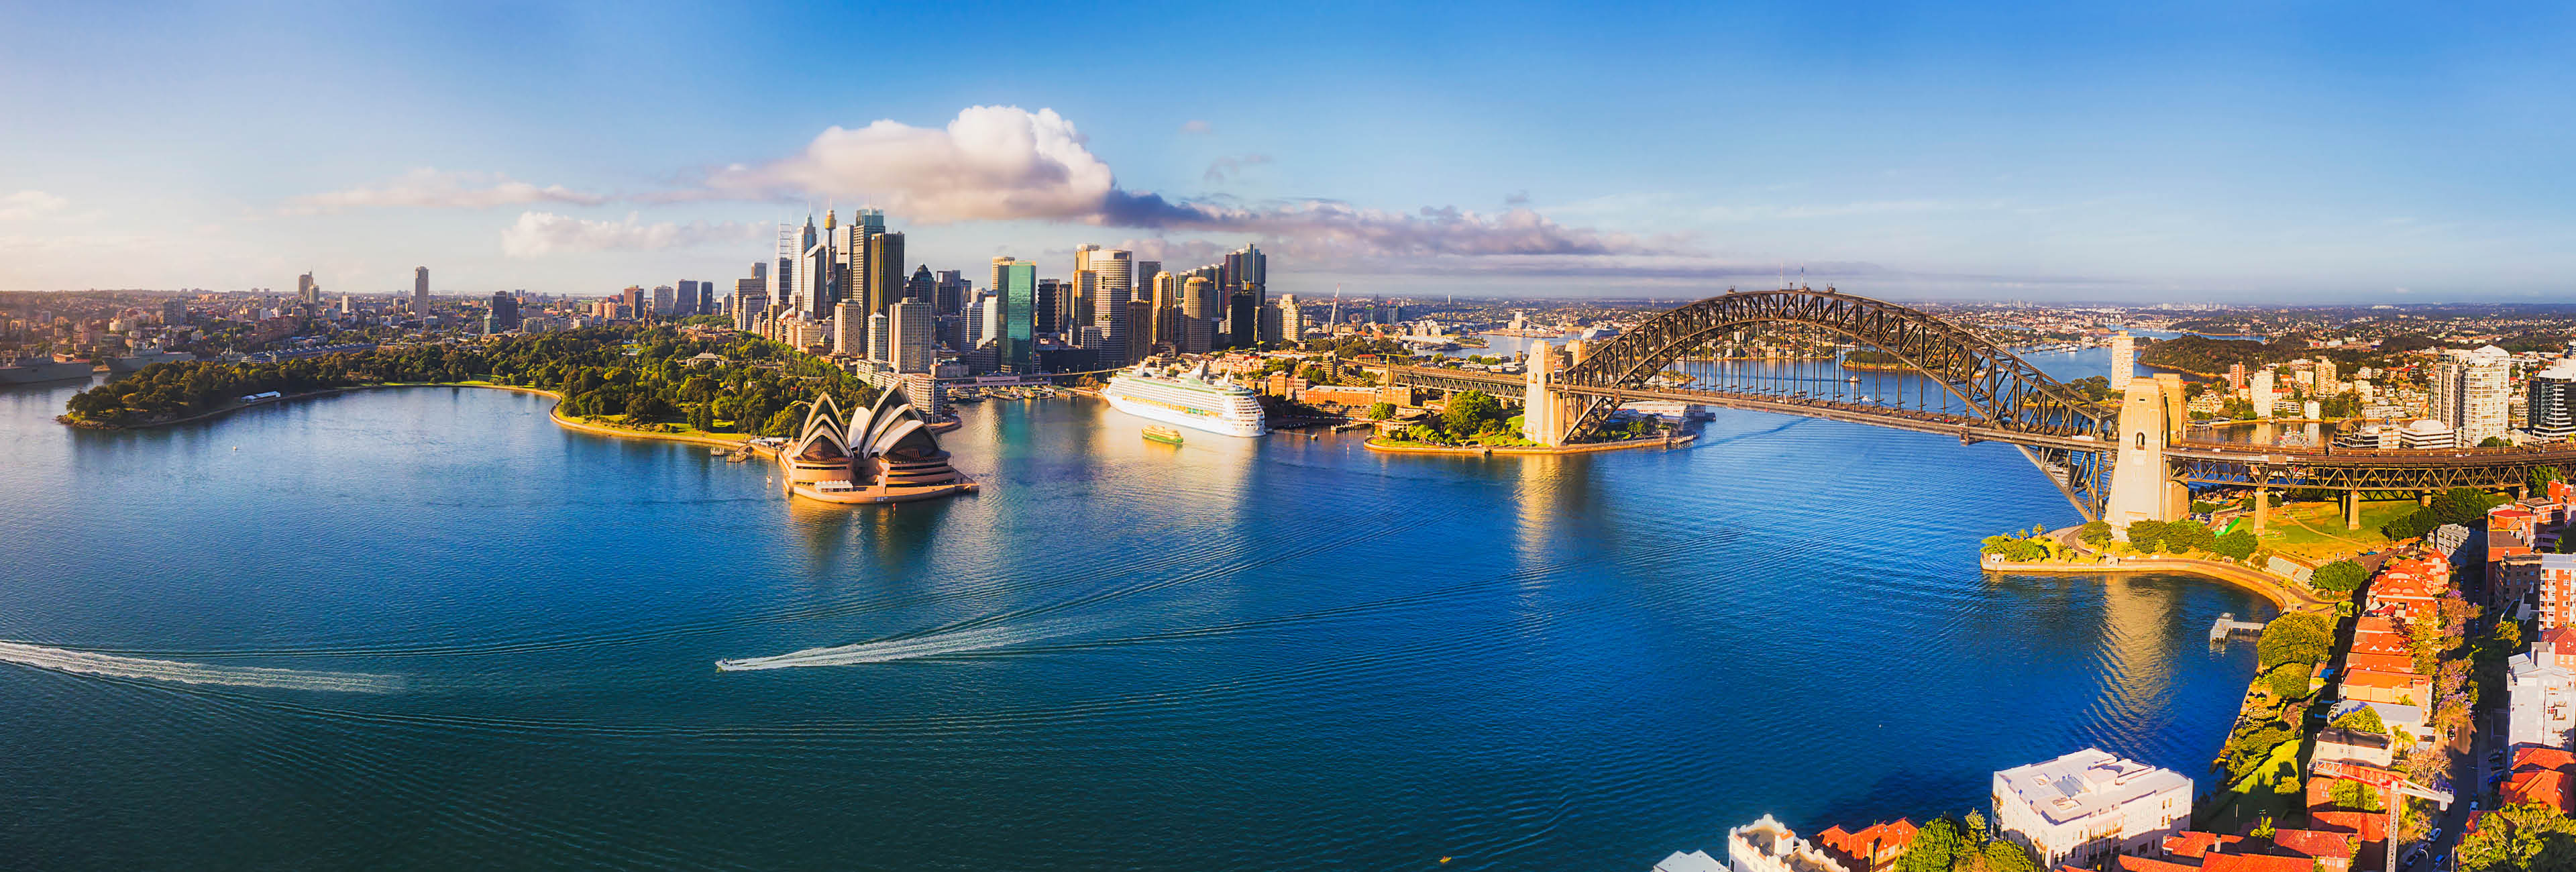 australia-cruise-deals2.jpg